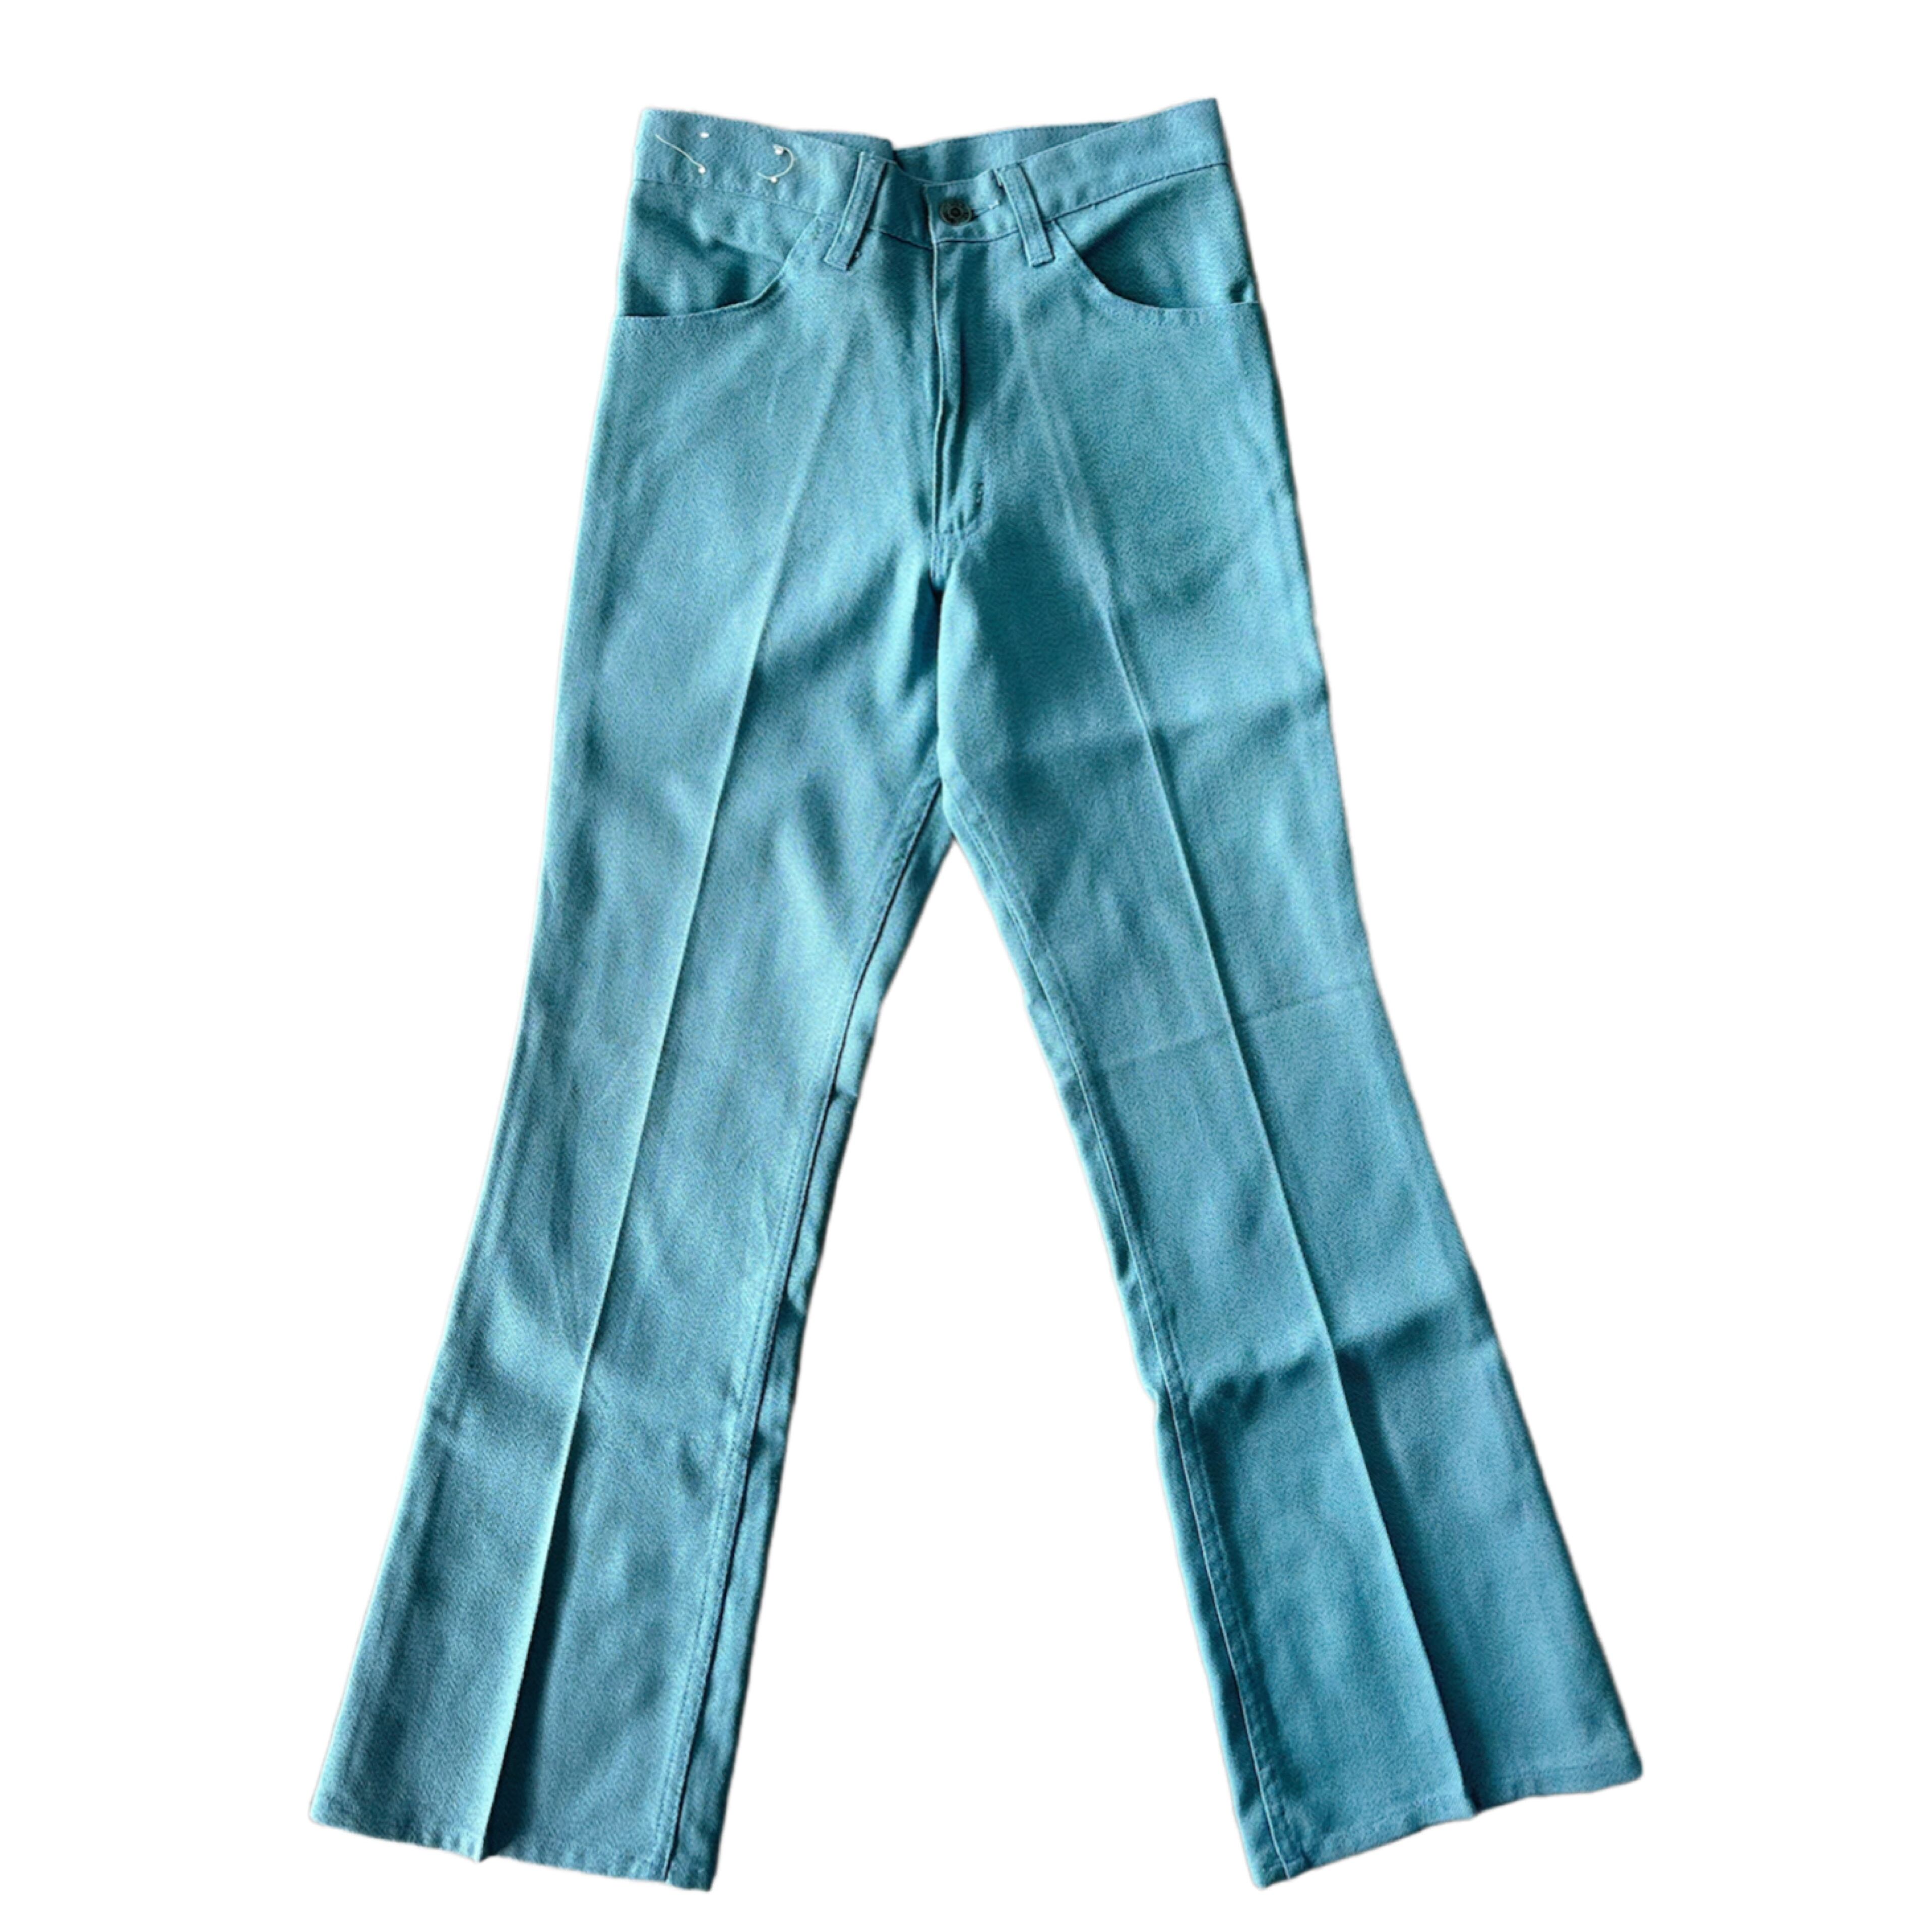 LEVI'S STA-PREST flare pants | THE SUN vintage